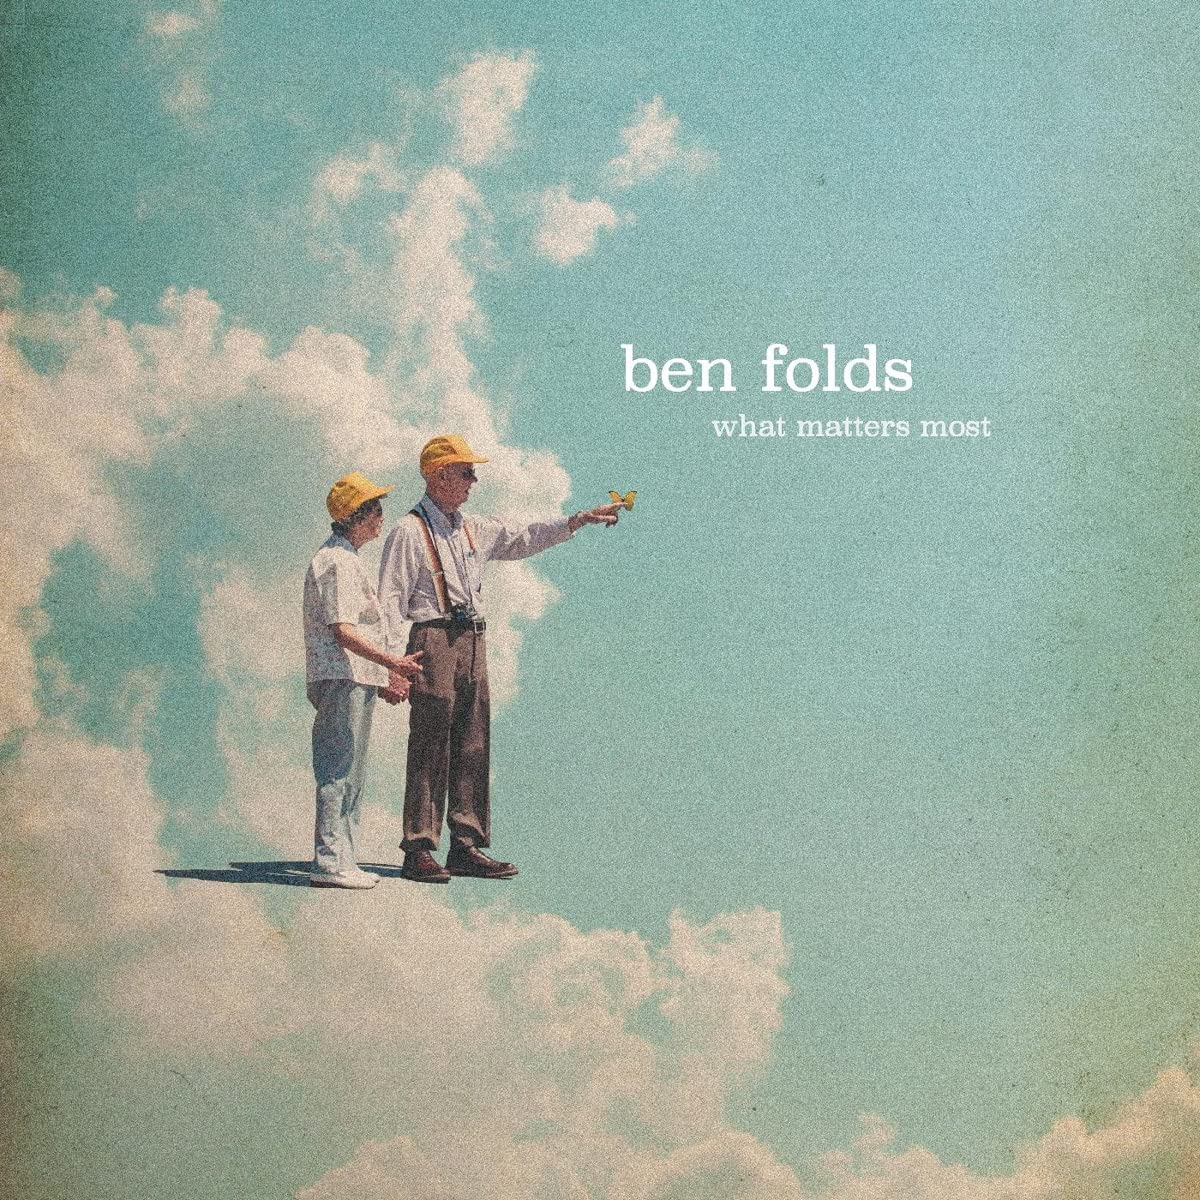 Ben Folds nuovo album e tour - immagini